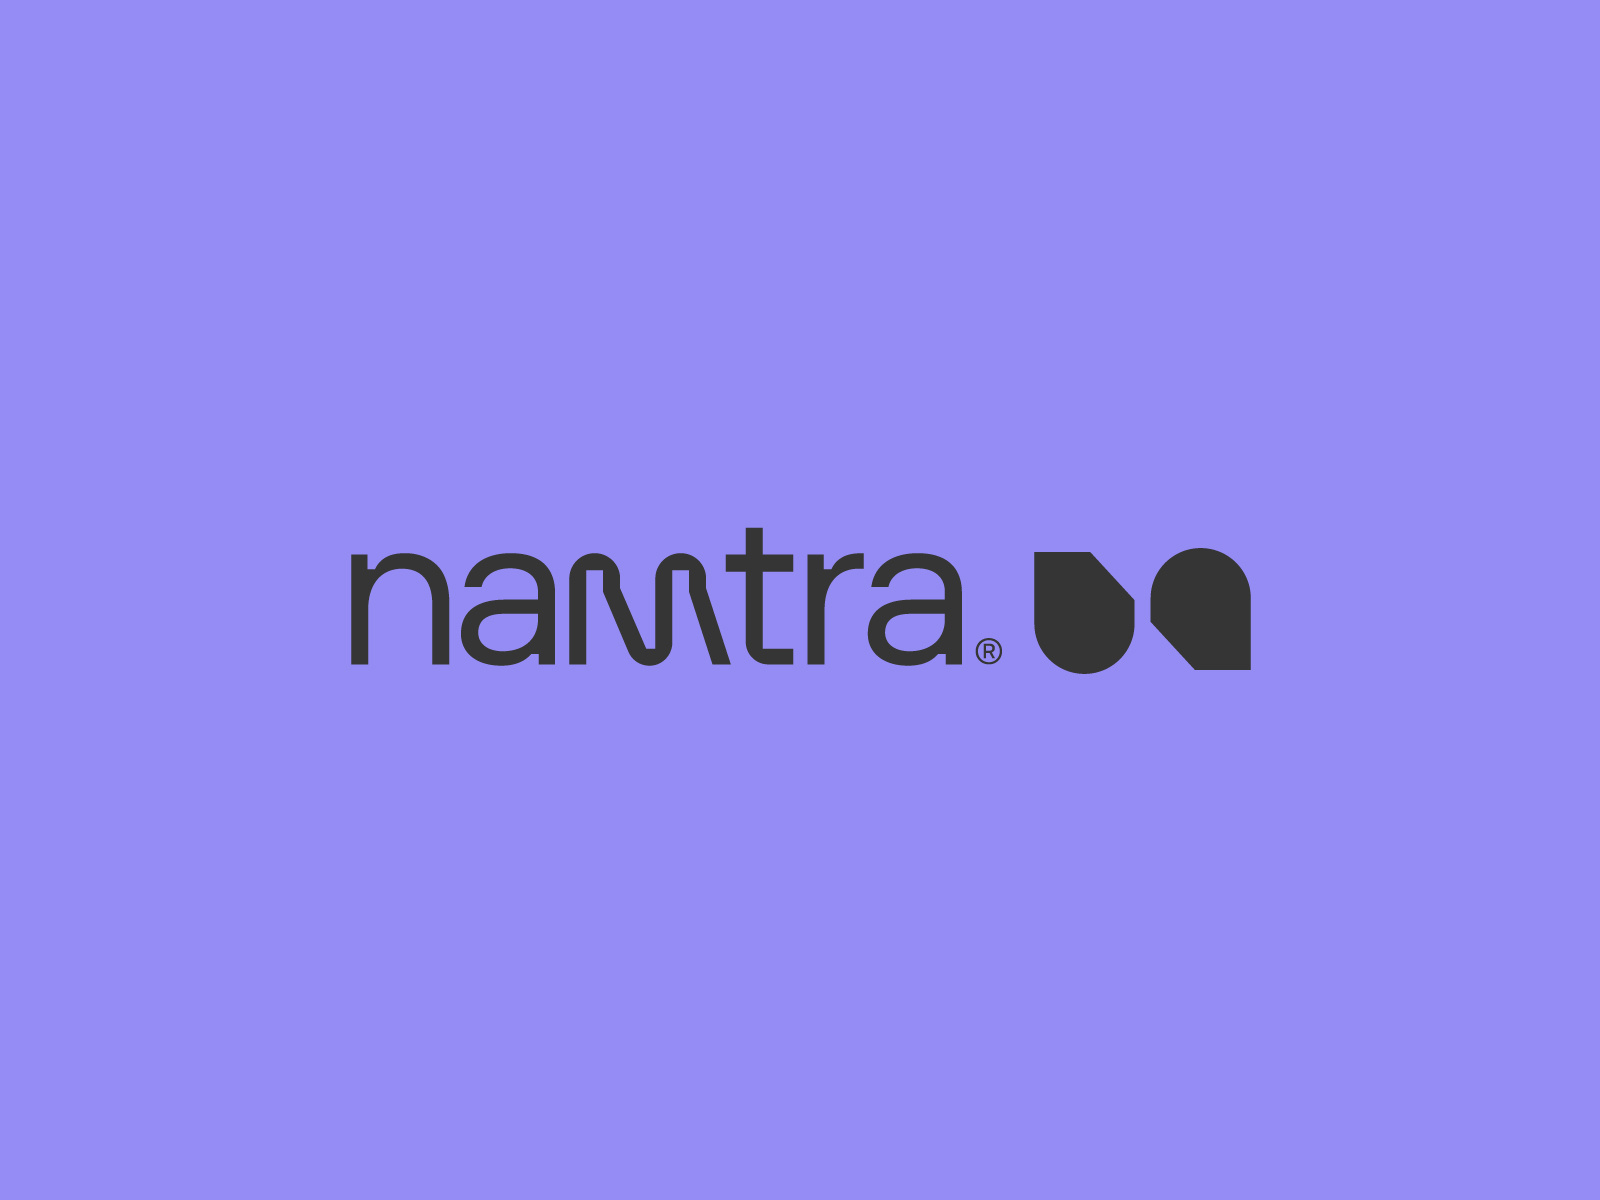 namtra® Brand Identity by VASK®️ Studio on Dribbble